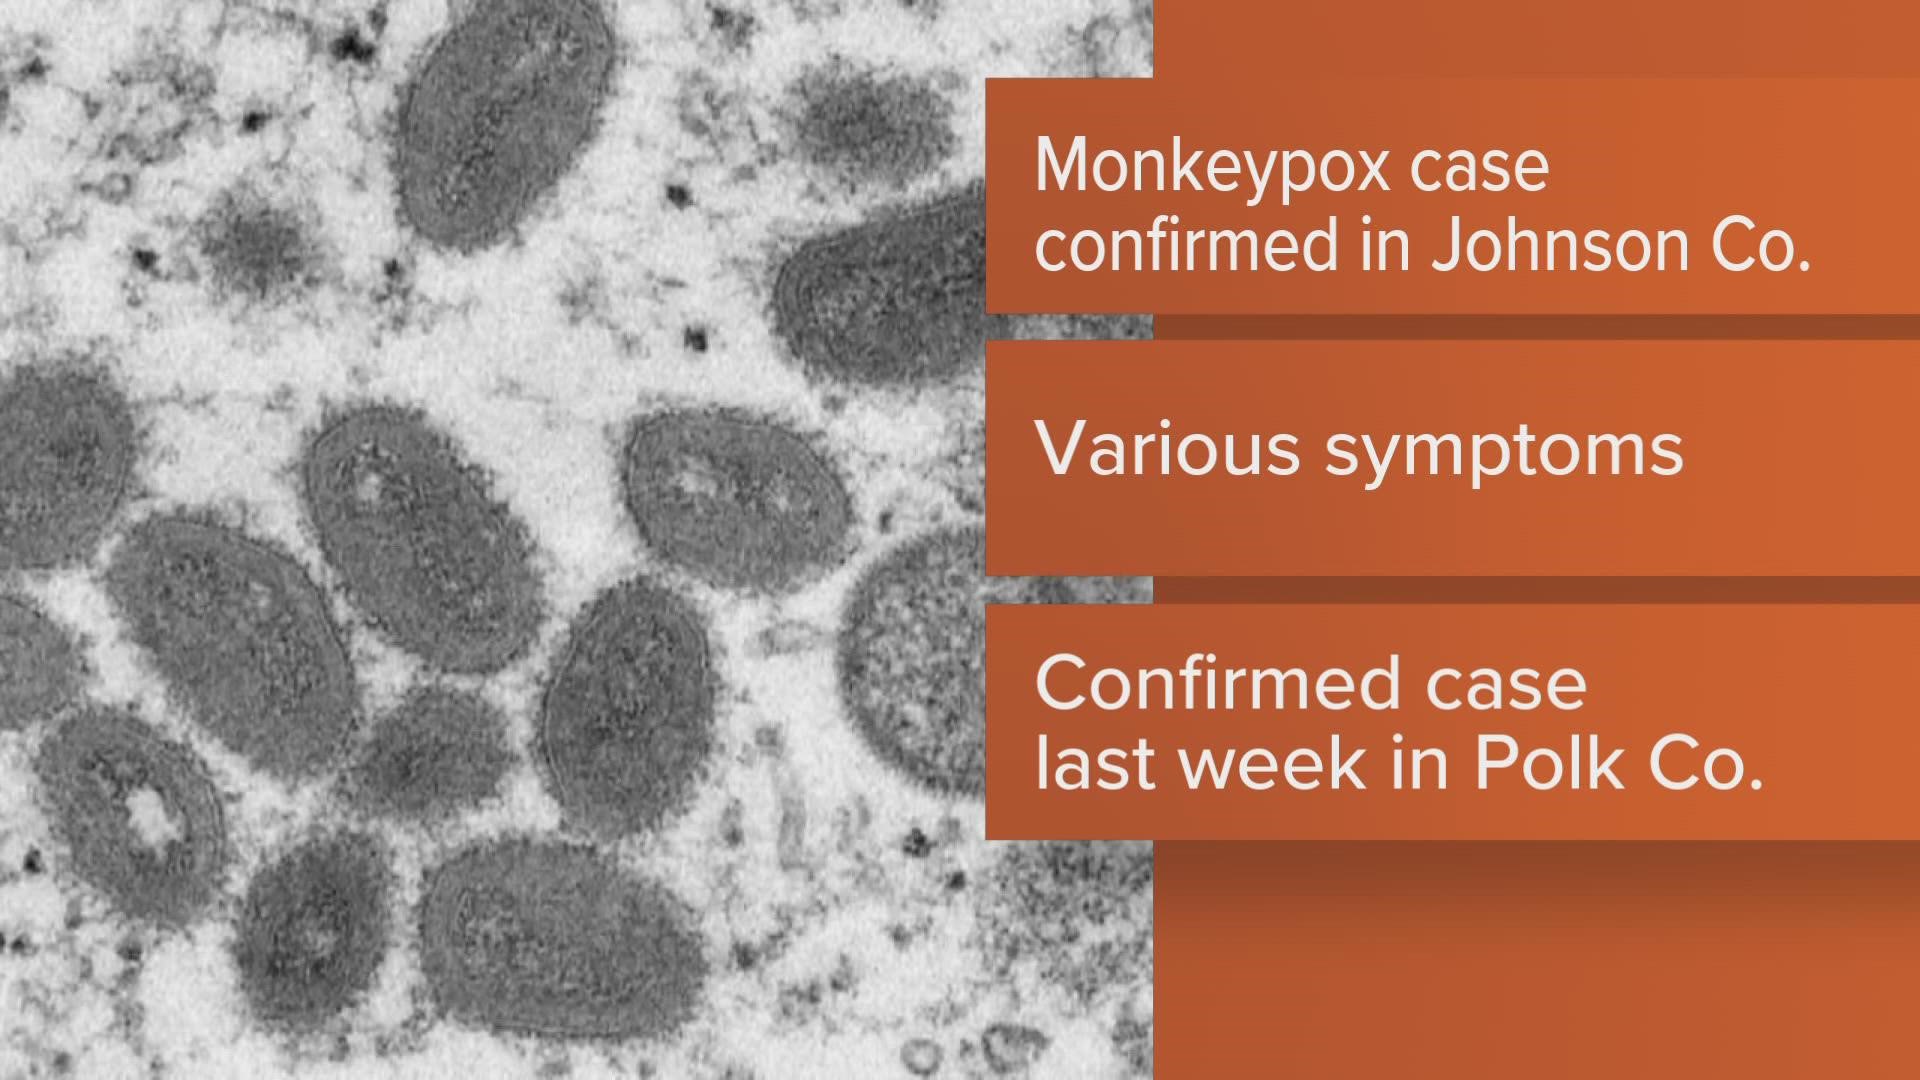 Polk County health leaders confirmed a monkeypox case last week.